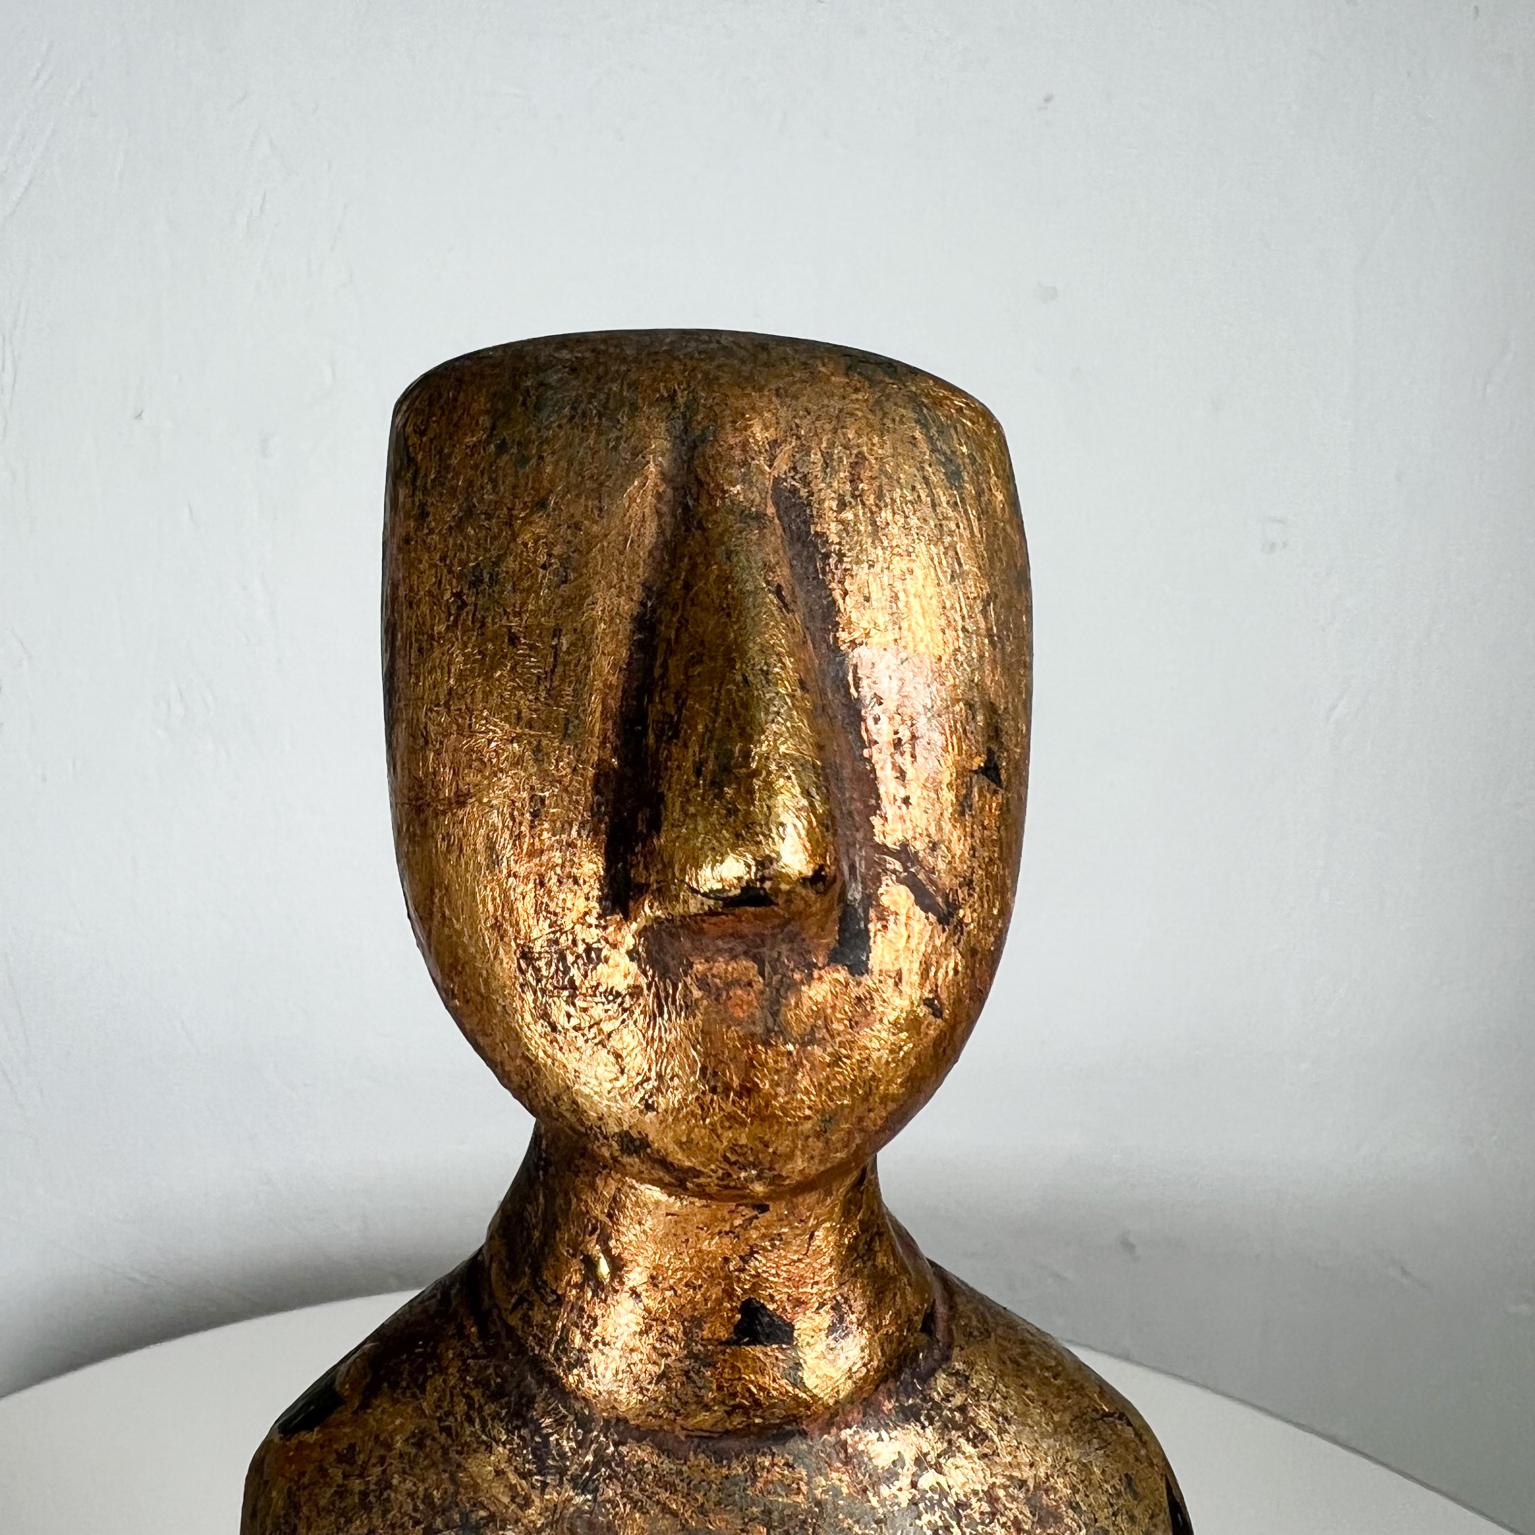 Sculpture d'art Oscar doré Figurine cycladique
11,88 haut x 3,5 l x 2 d
Etat original vintage d'occasion.
Reportez-vous aux images fournies.
